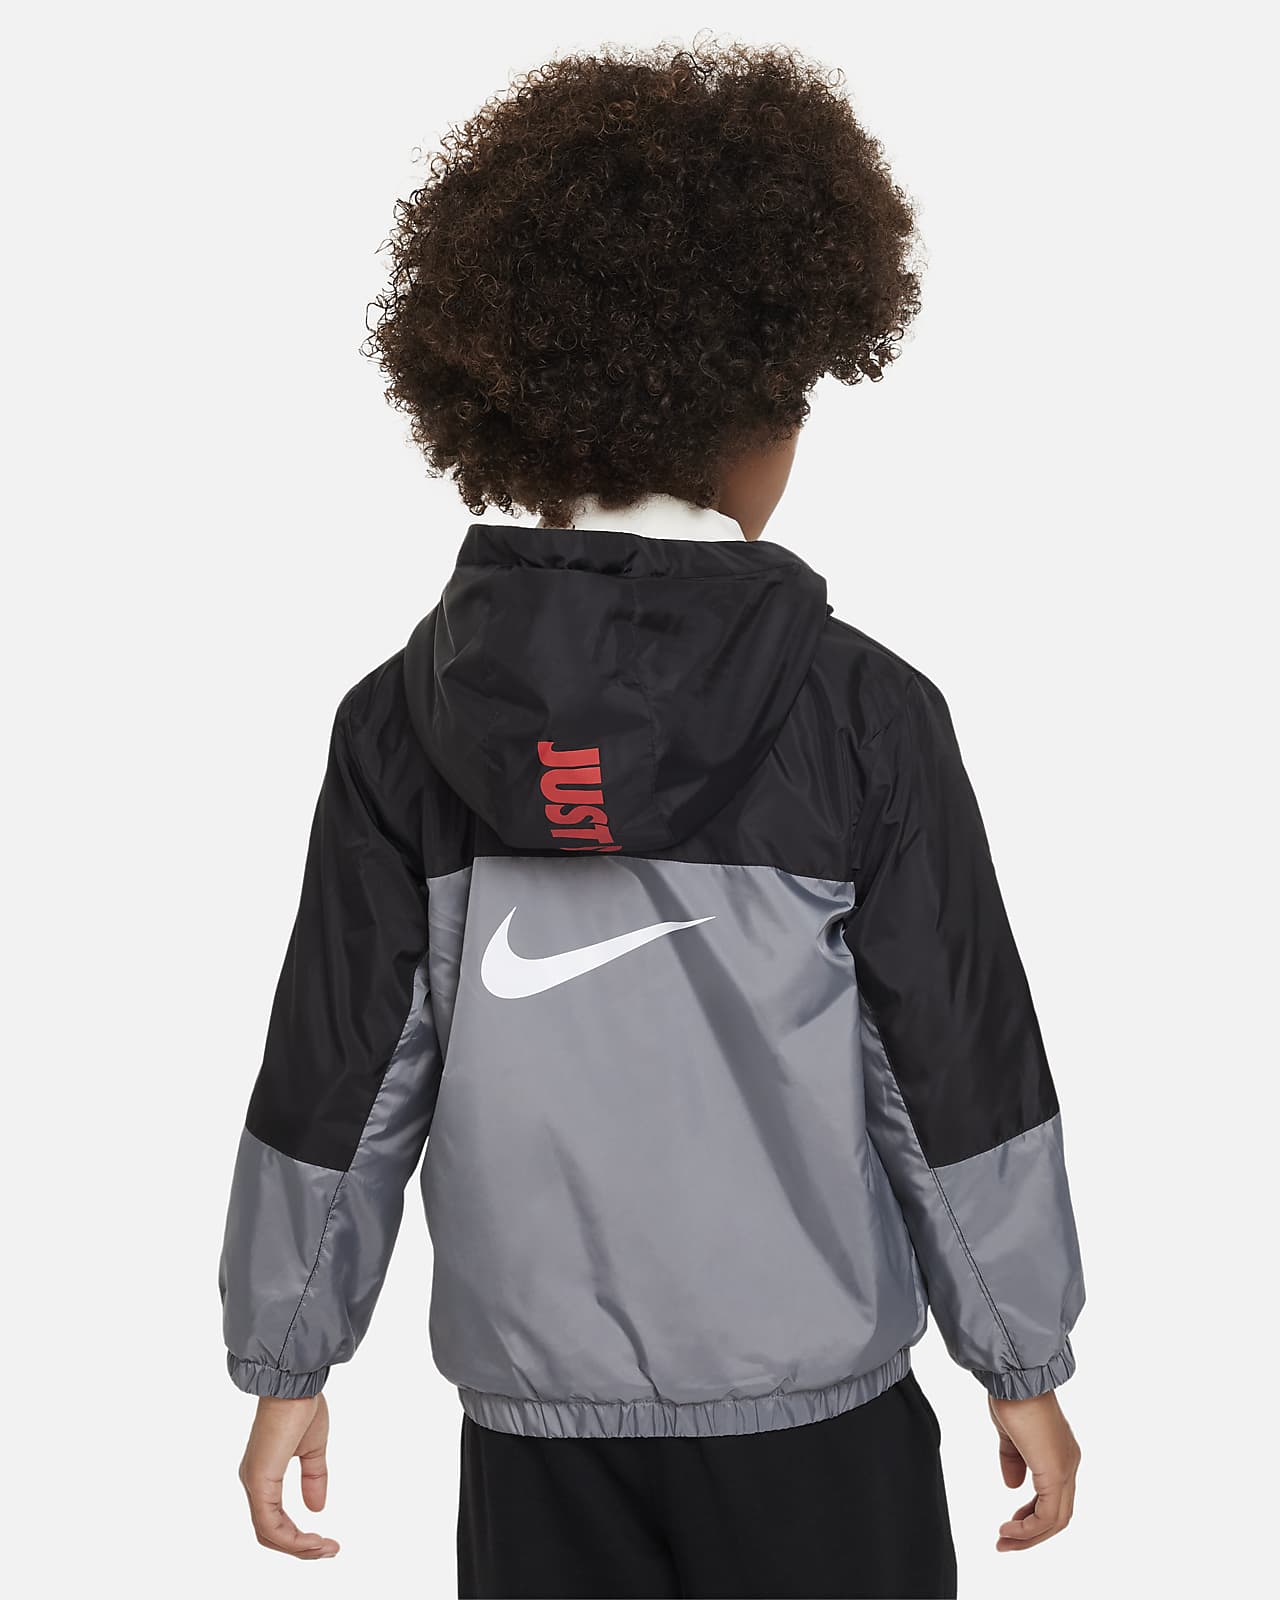 Kurtka dla małych dzieci Nike Fleece Lined Woven Jacket. Nike PL